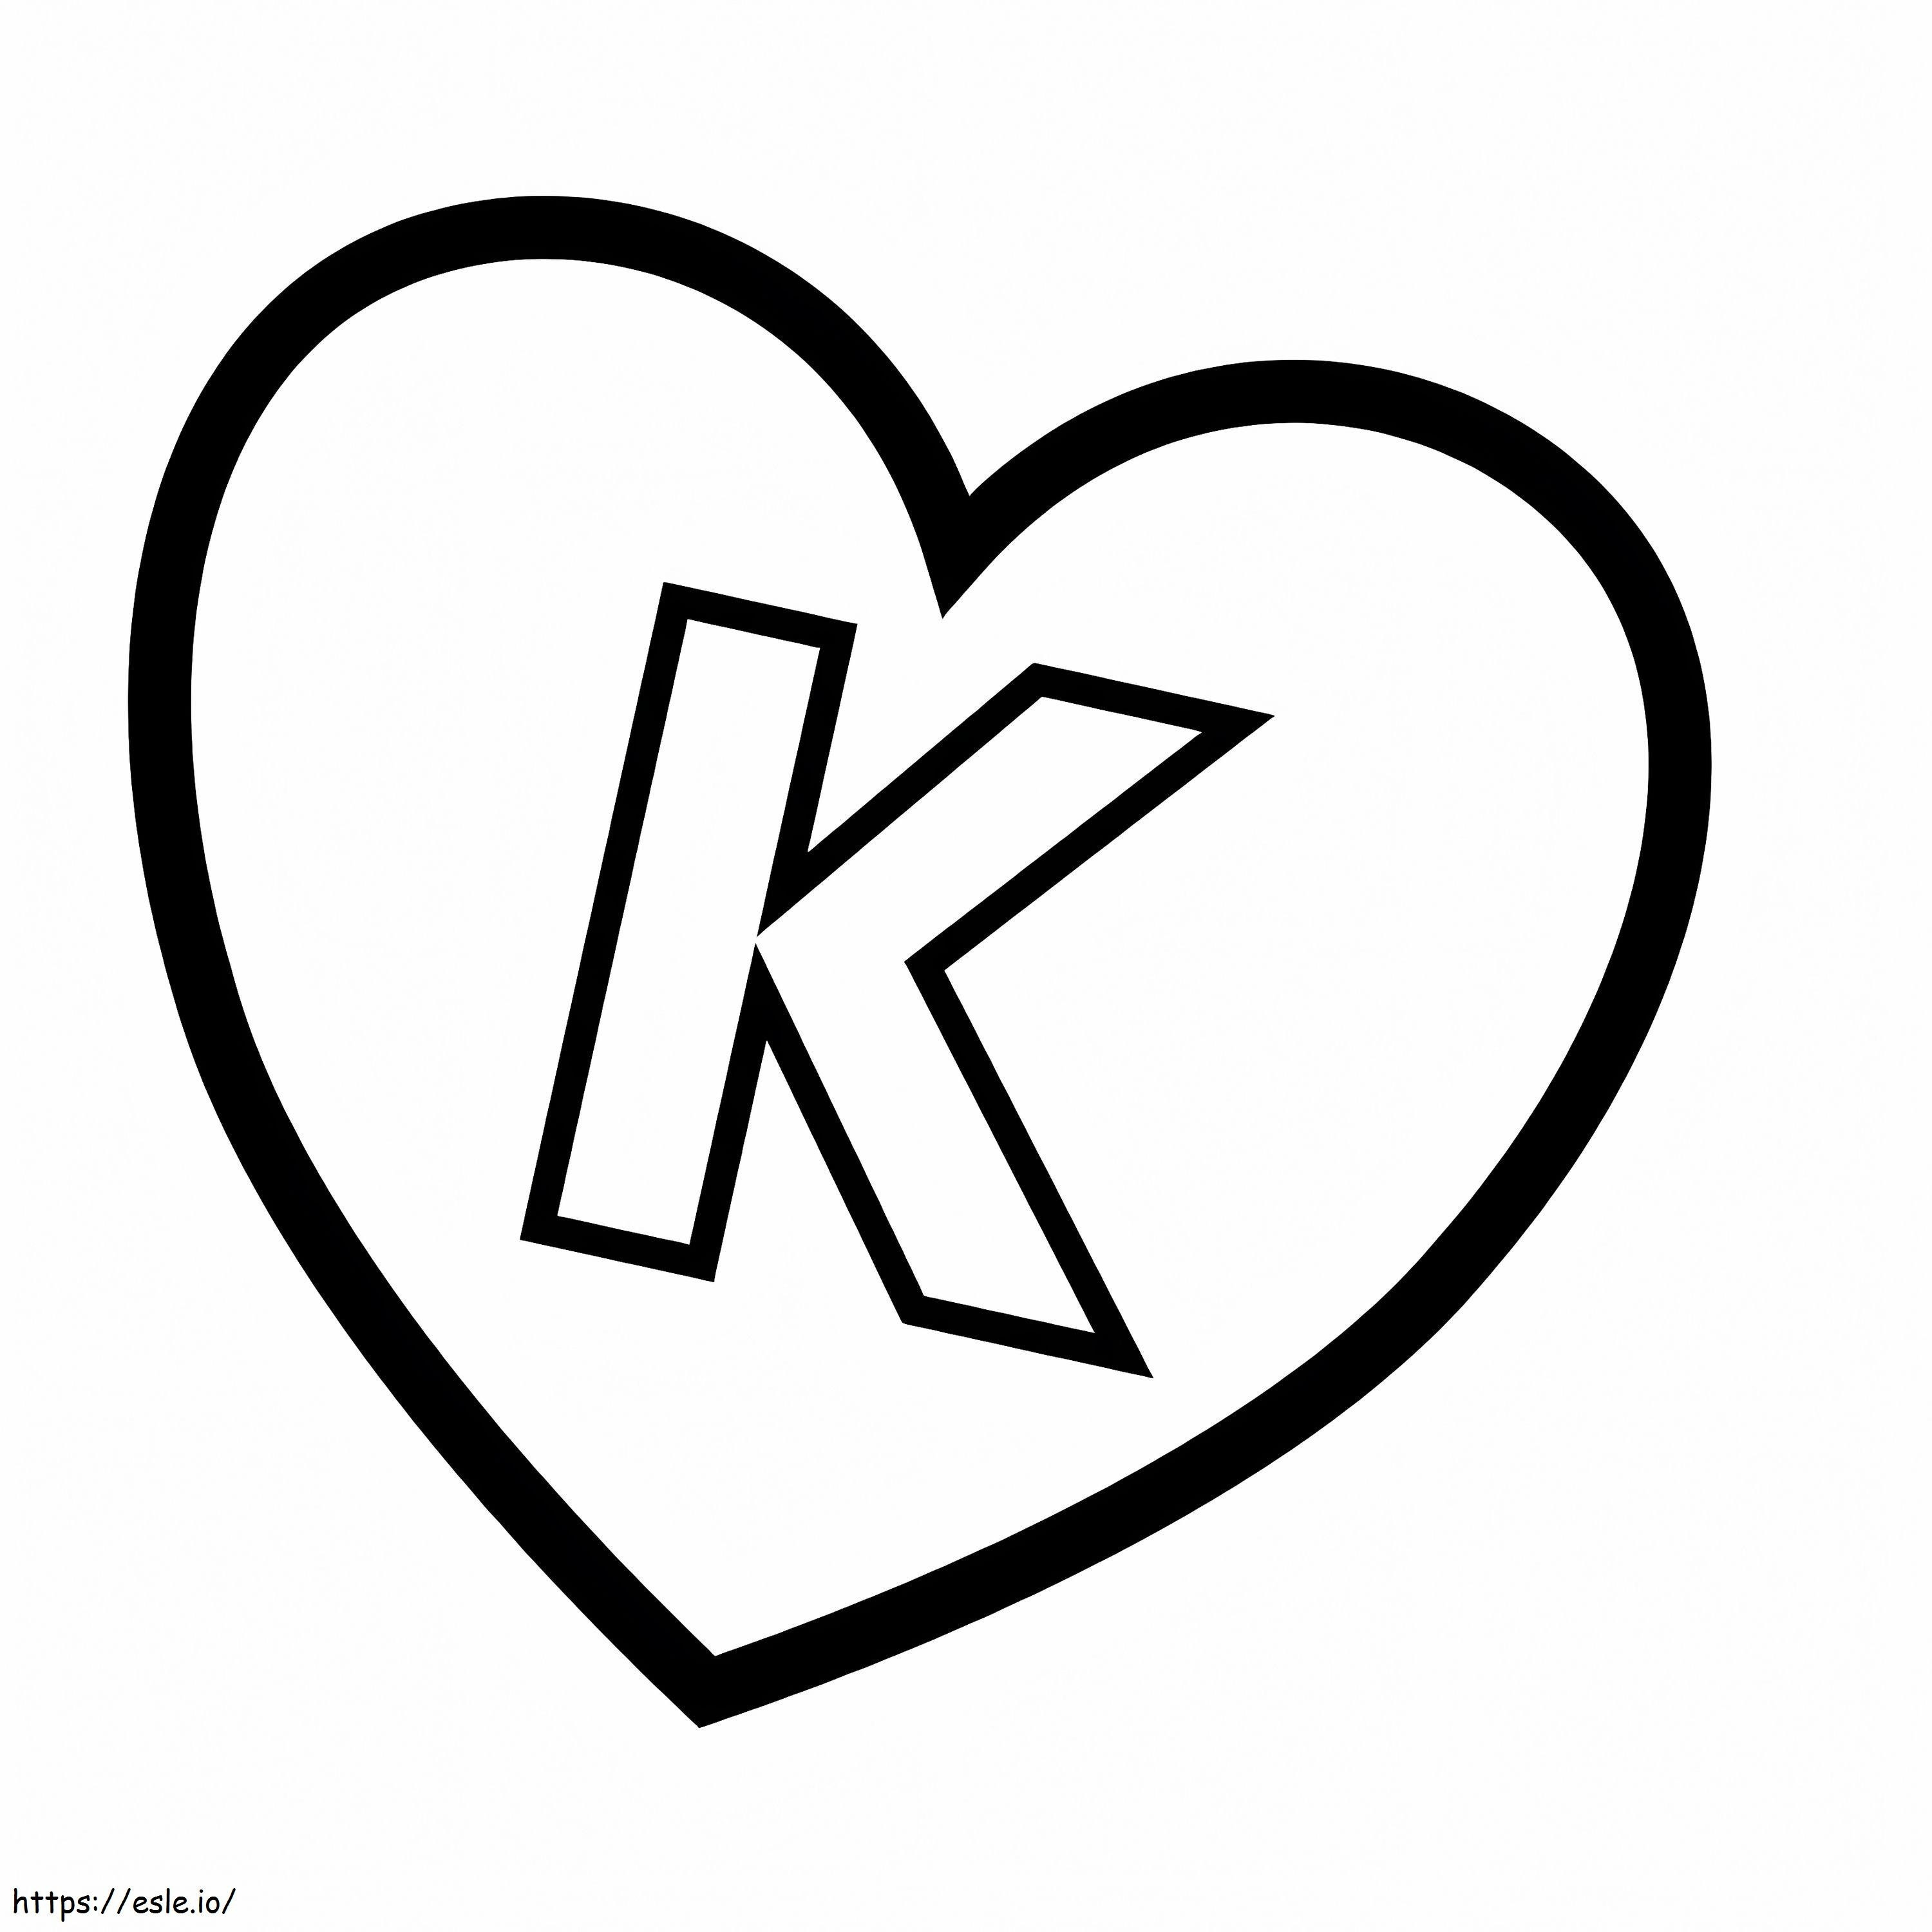 Lettera K nel cuore da colorare